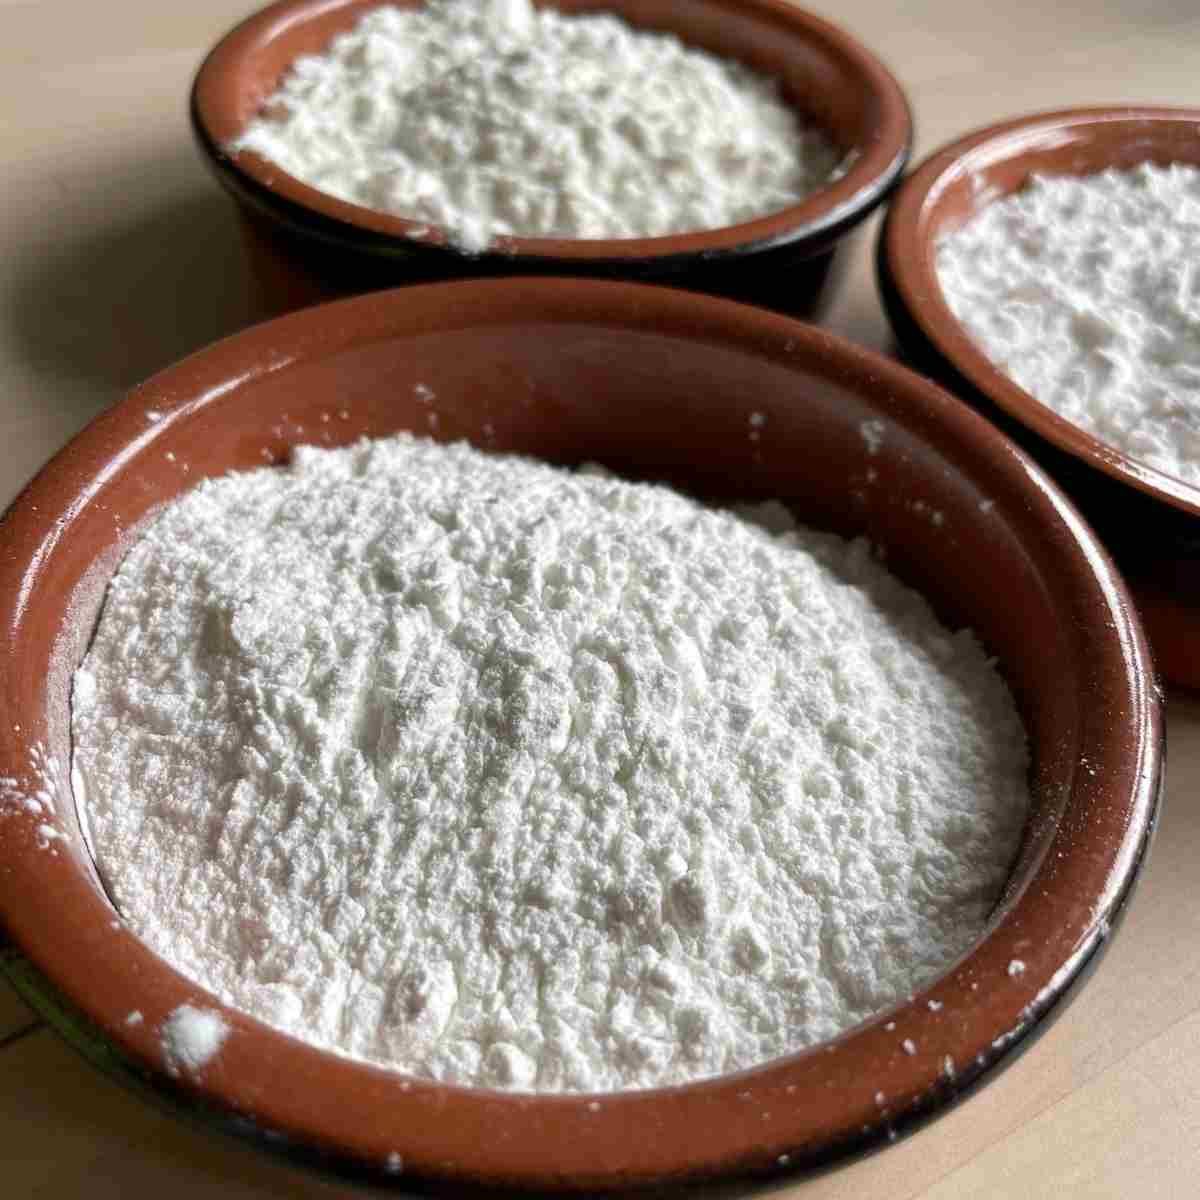 Glutinous rice flour up close